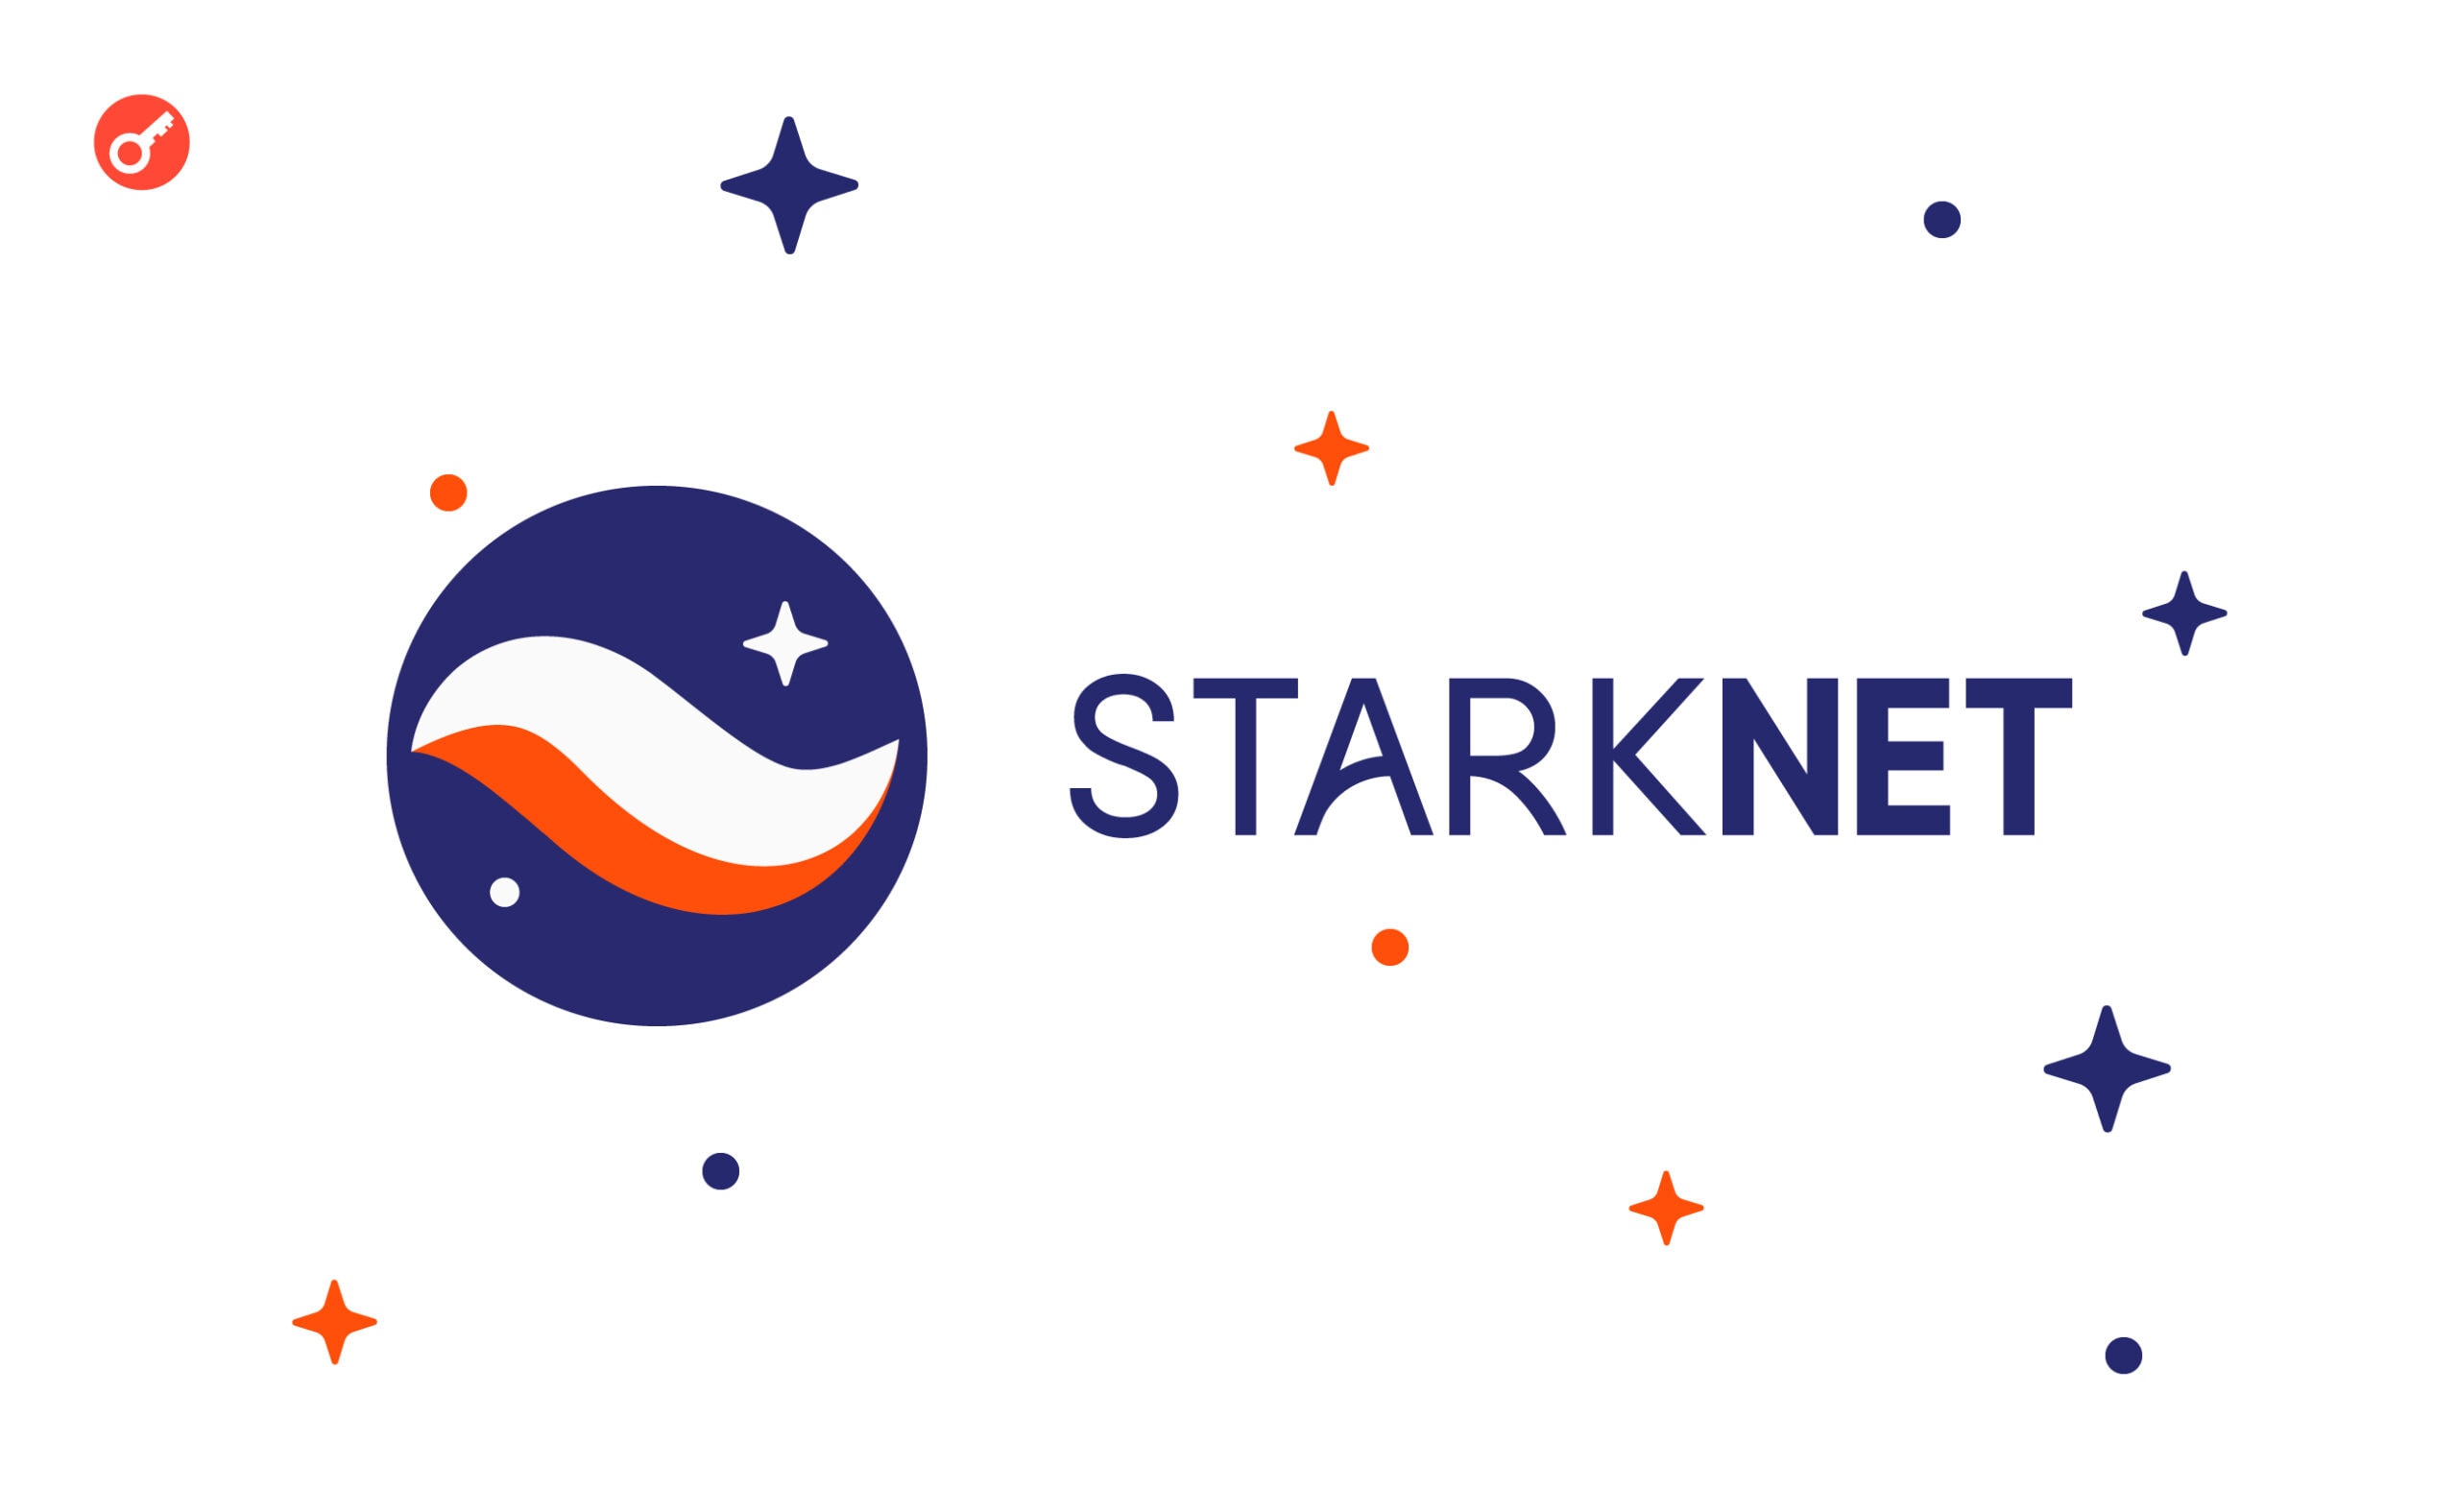 Starknet з 12 липня інтегрує важливі оновлення в основну мережу. Головний колаж новини.